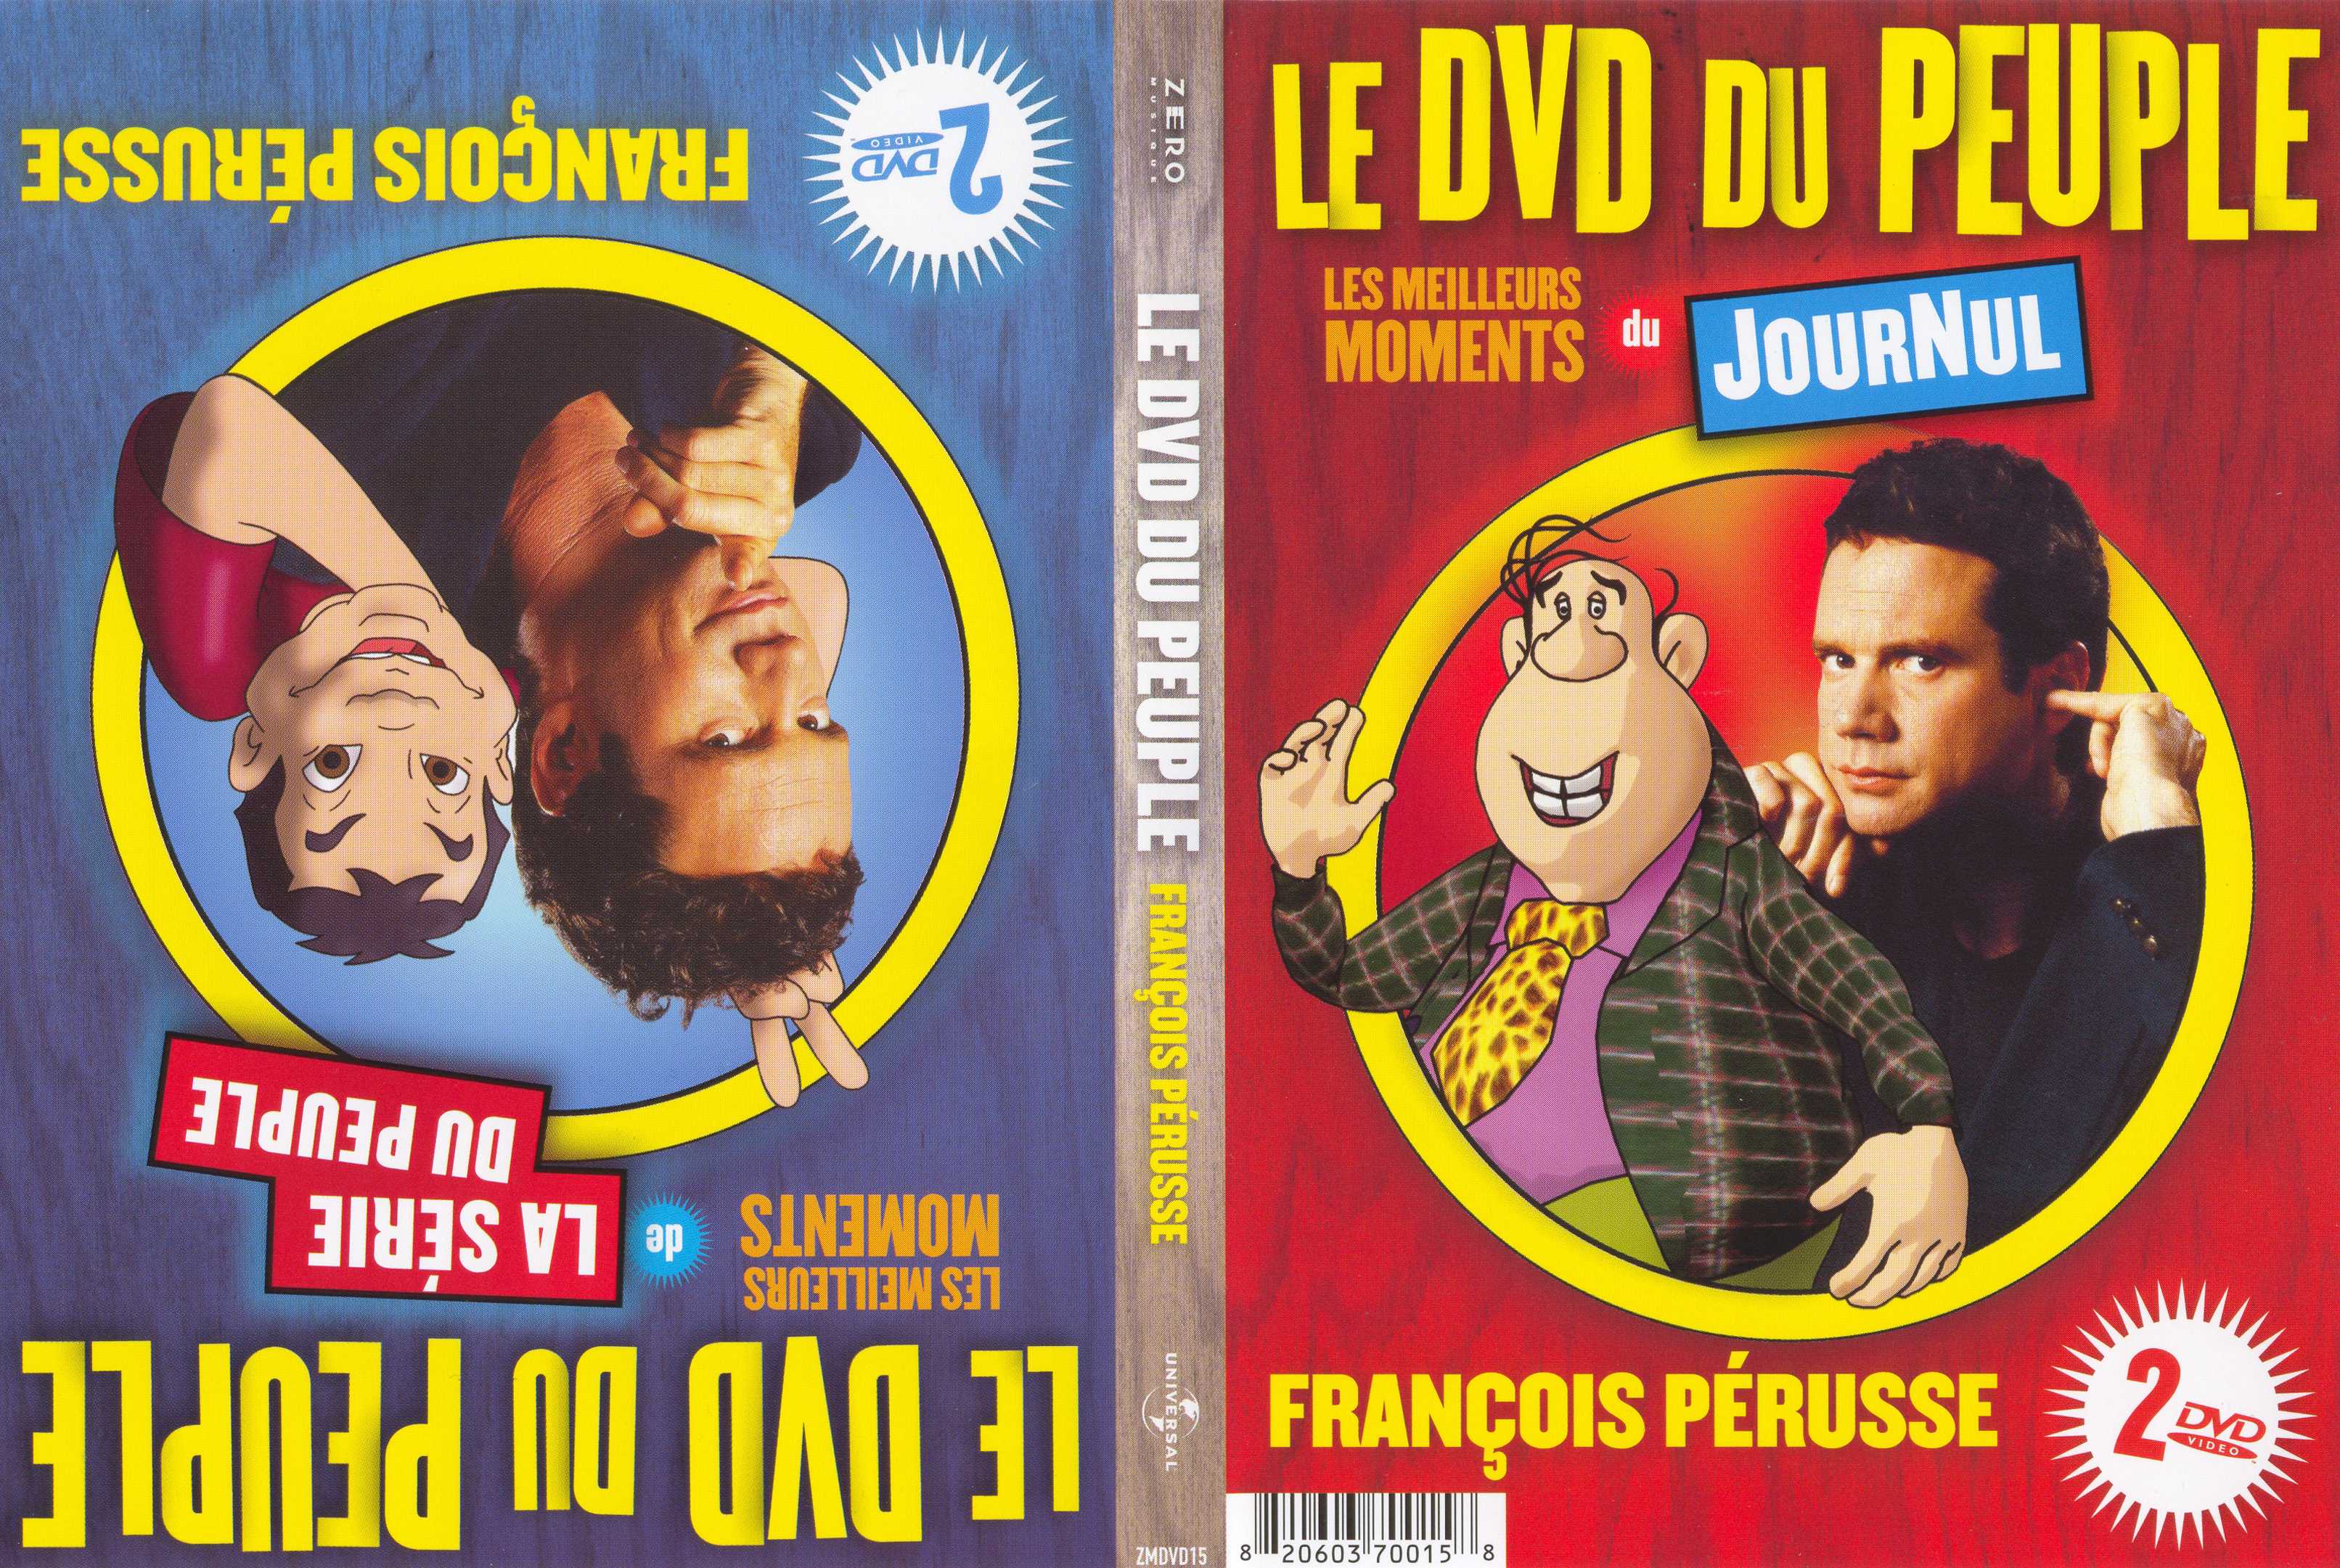 Jaquette DVD Francois Perusse le dvd du peuple